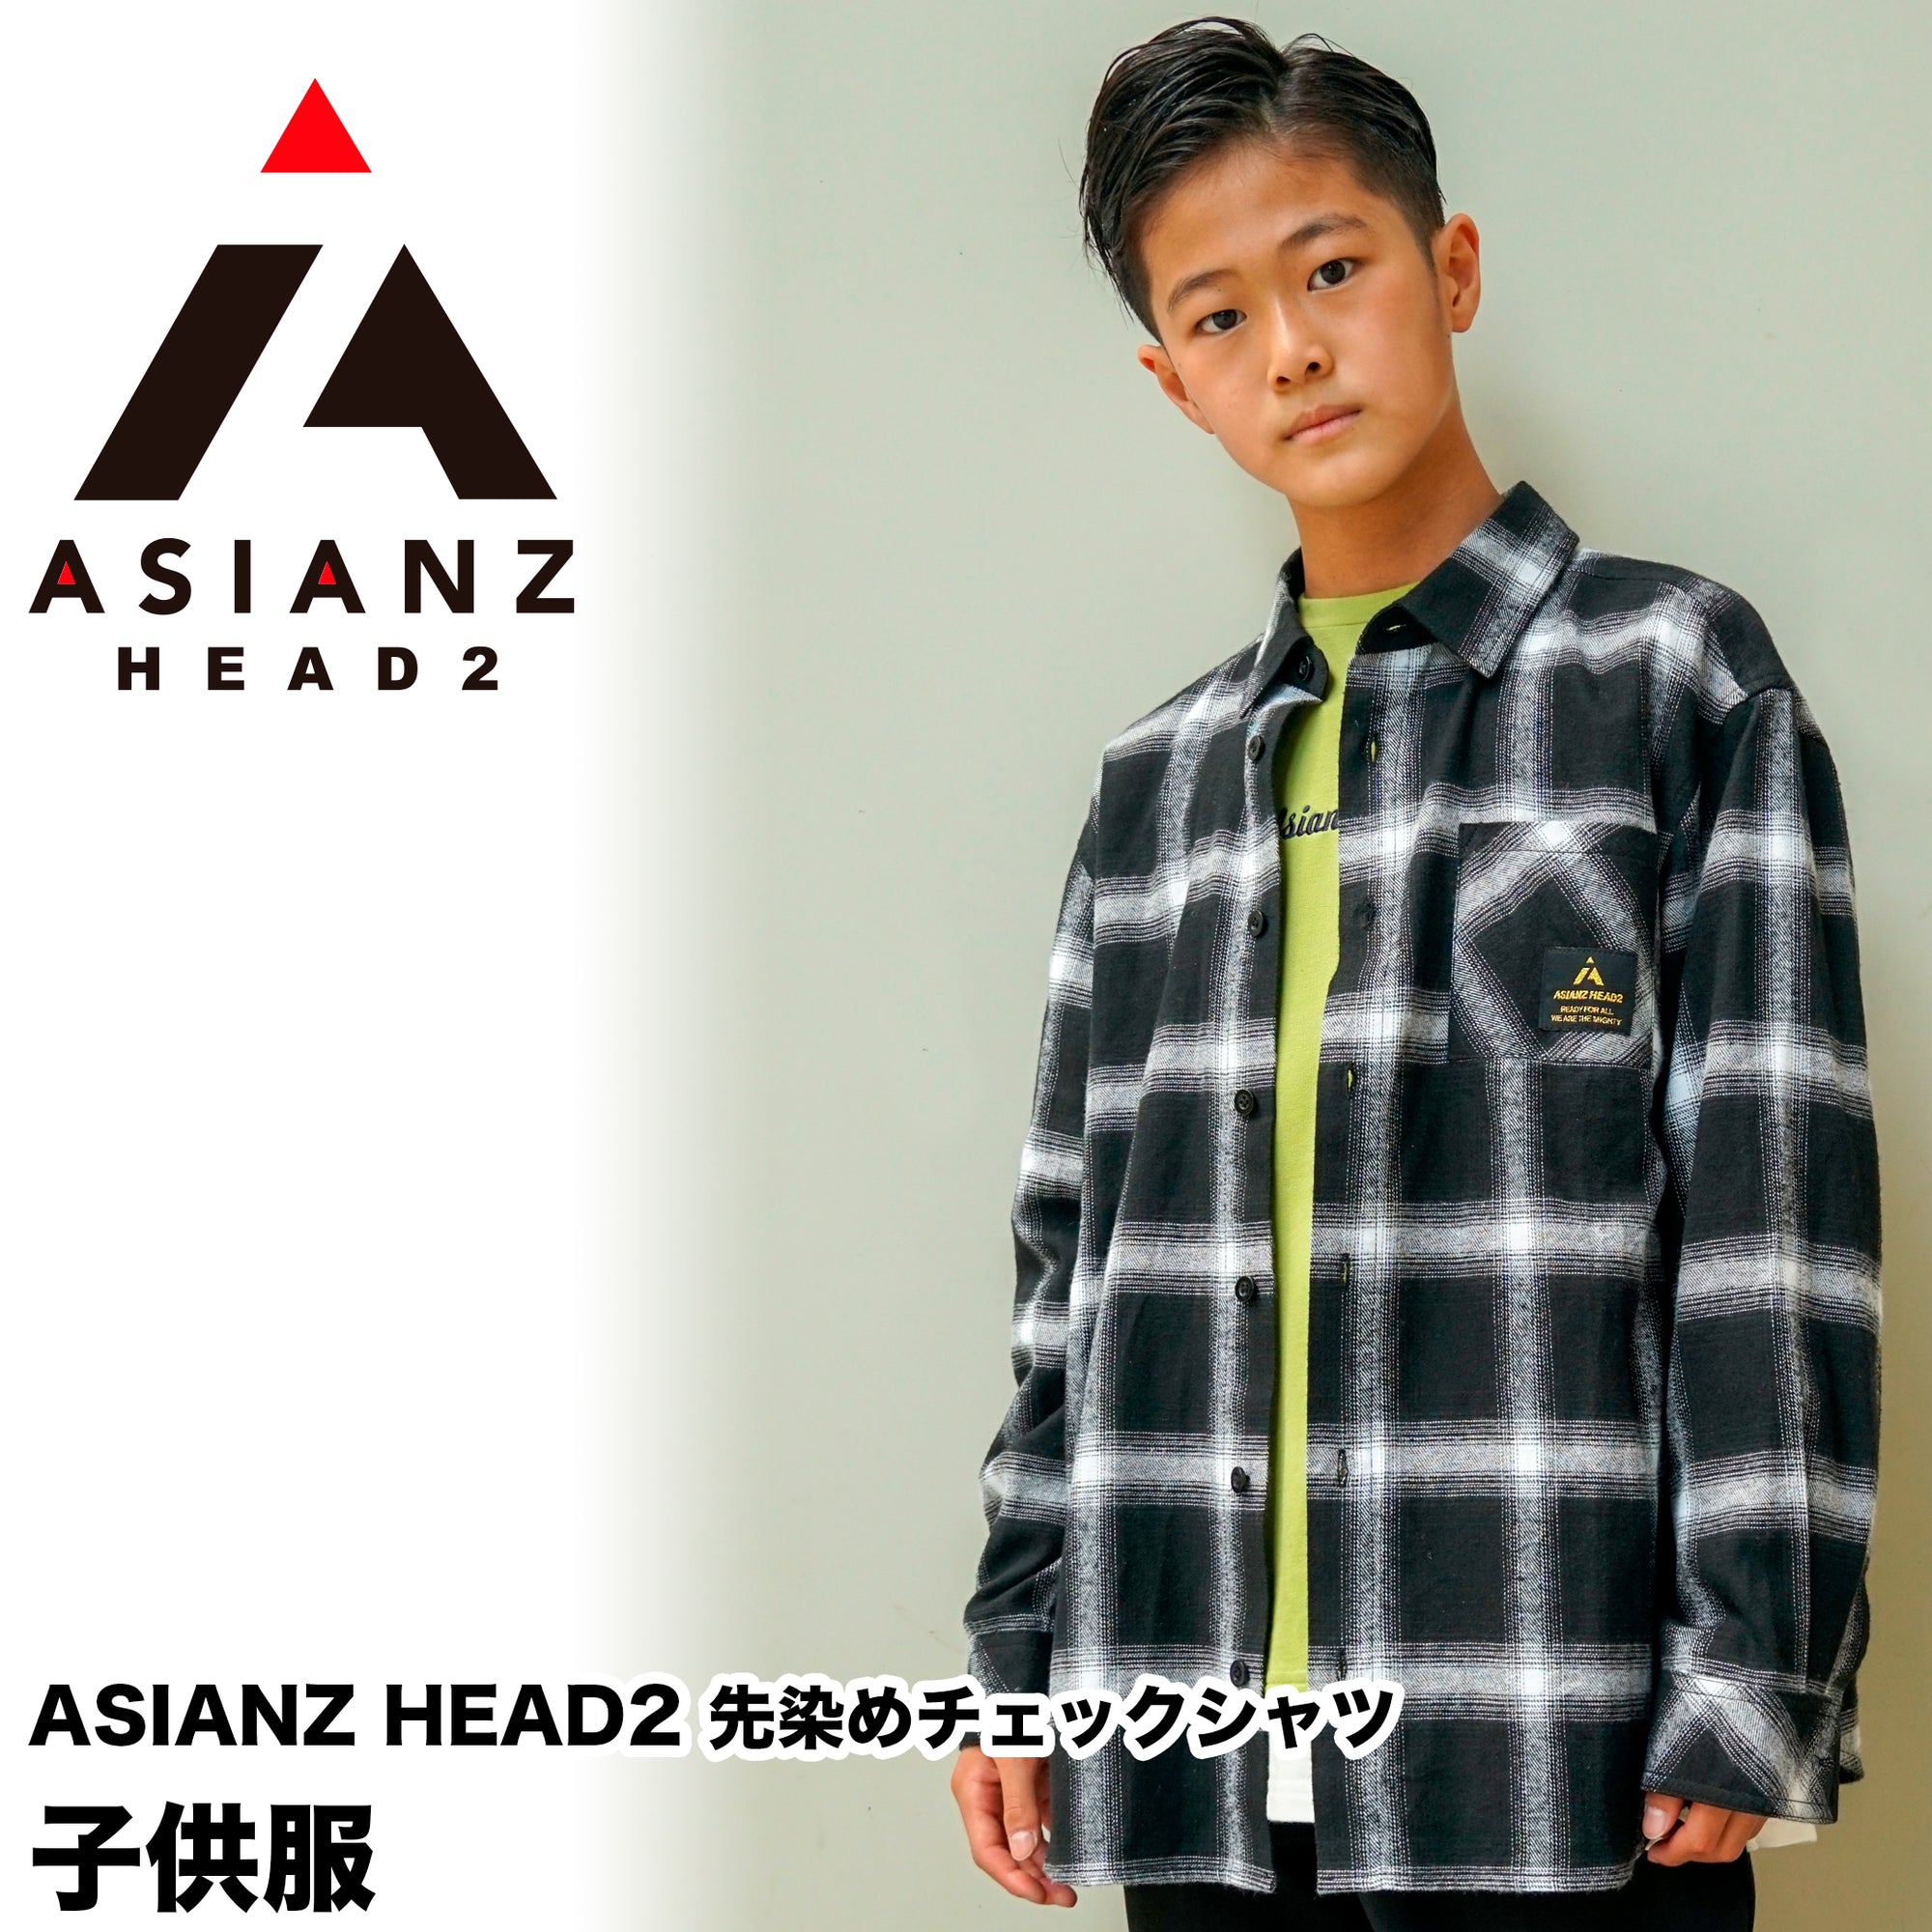 (40%オフ! セール商品)ASIANZ HEAD2 先染めチェックシャツ キッズウェアー